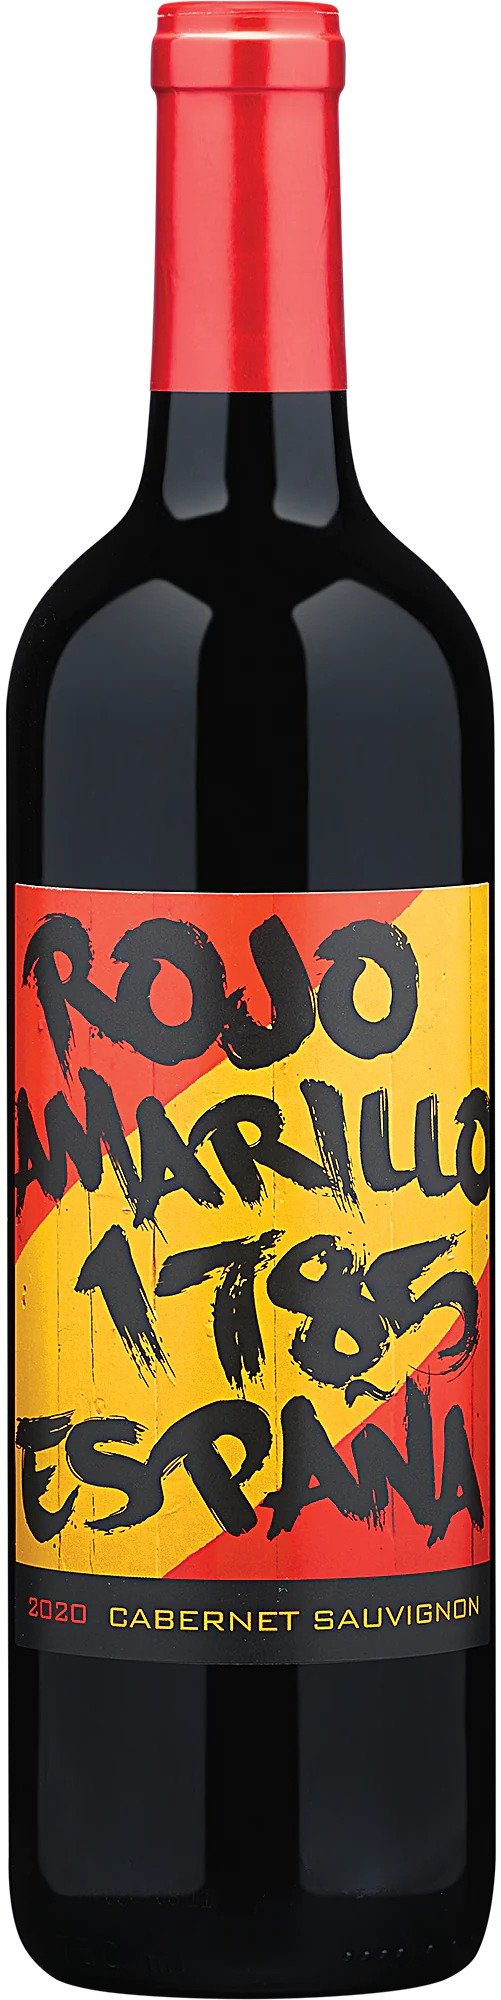 2020 Rojo Amarillo 1785 Cabernet Sauvignon